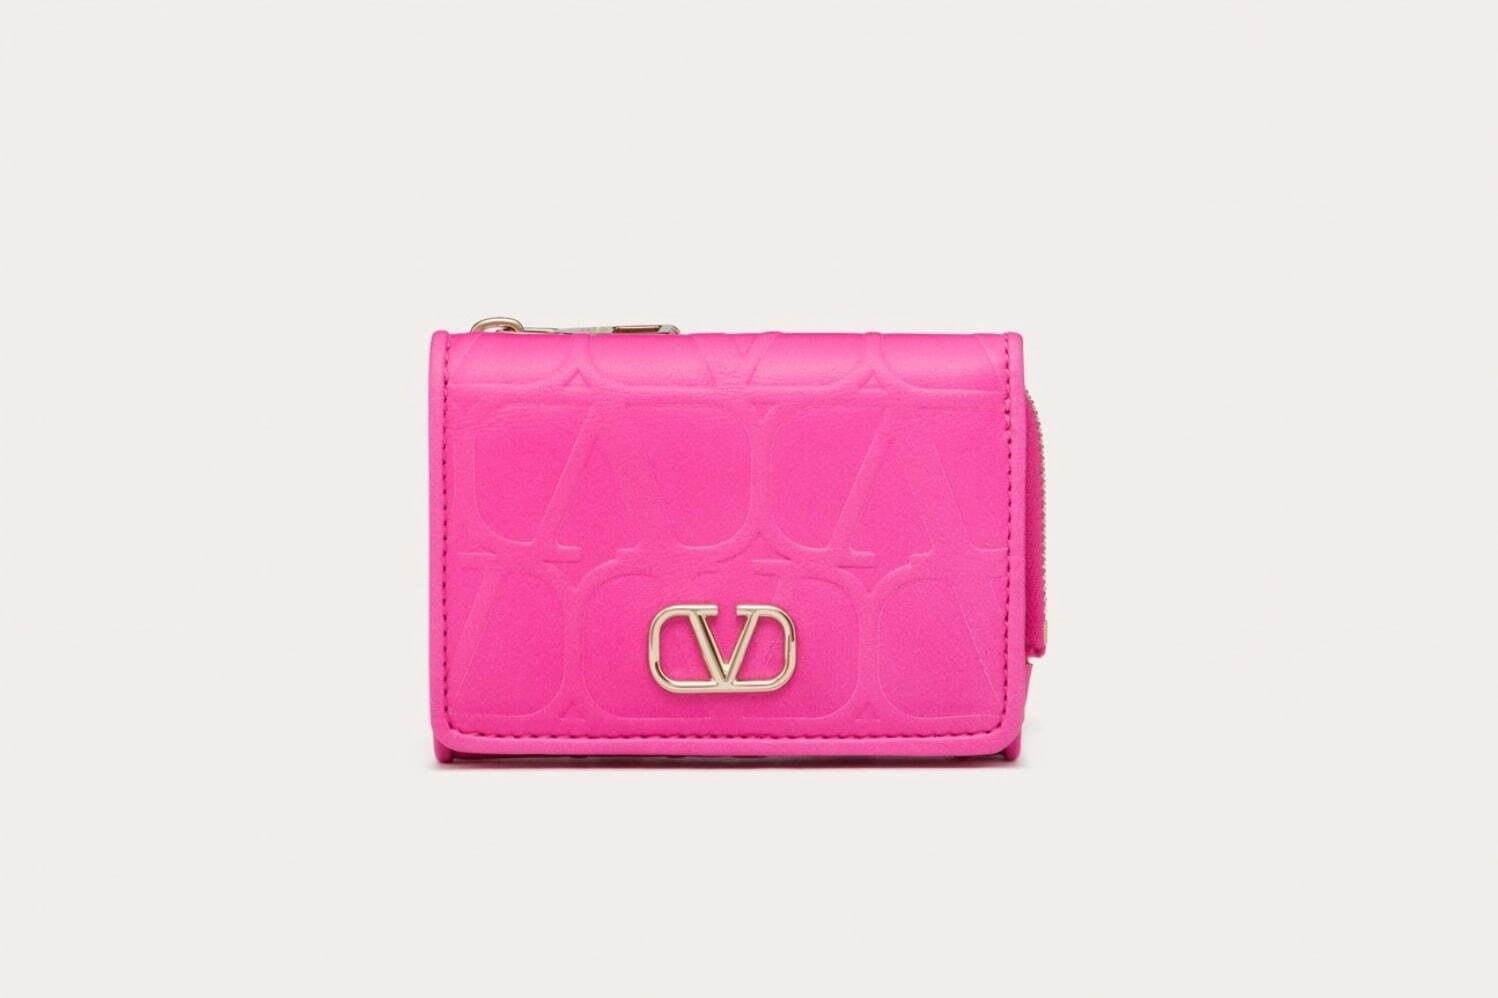 ヴァレンティノ ガラヴァーニの新作レディース財布、モノグラム柄